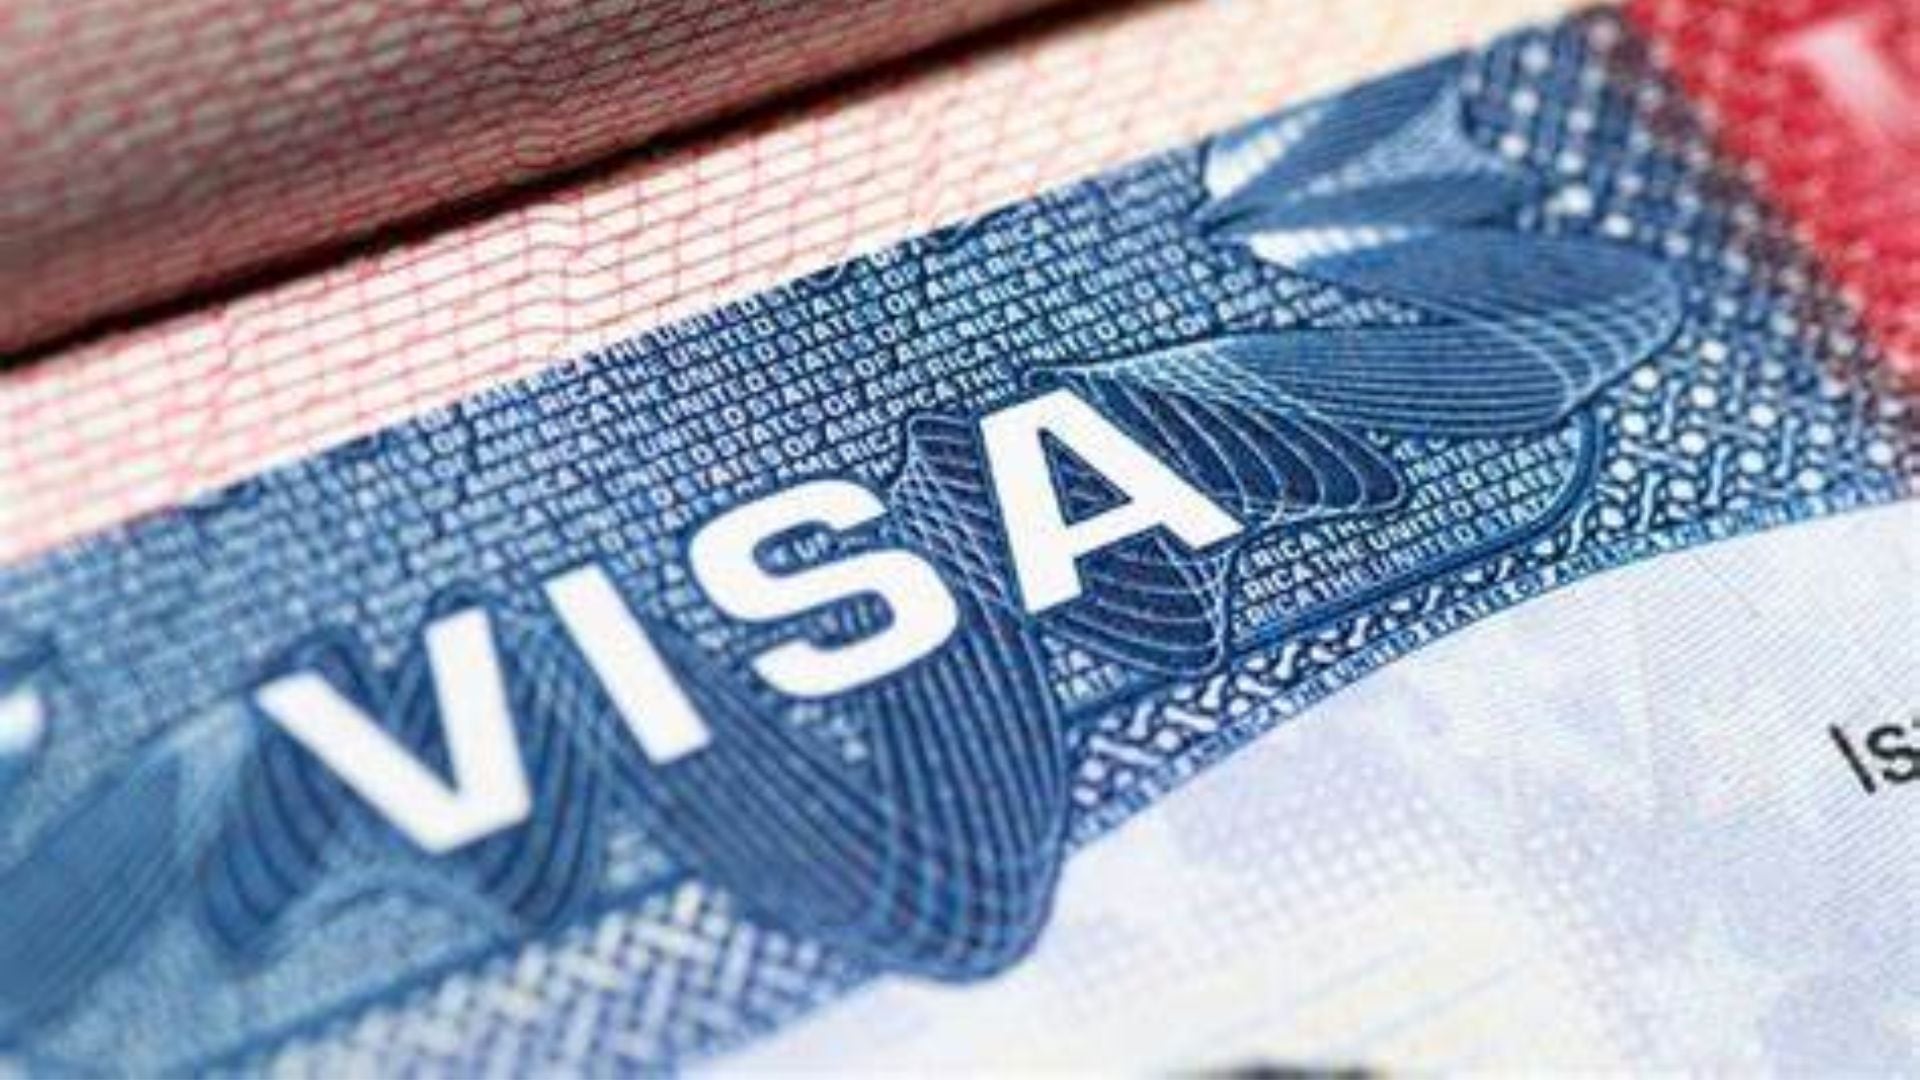 Los países que quieran participar en el programa de visas deben cumplir tres puntos de referencia críticos